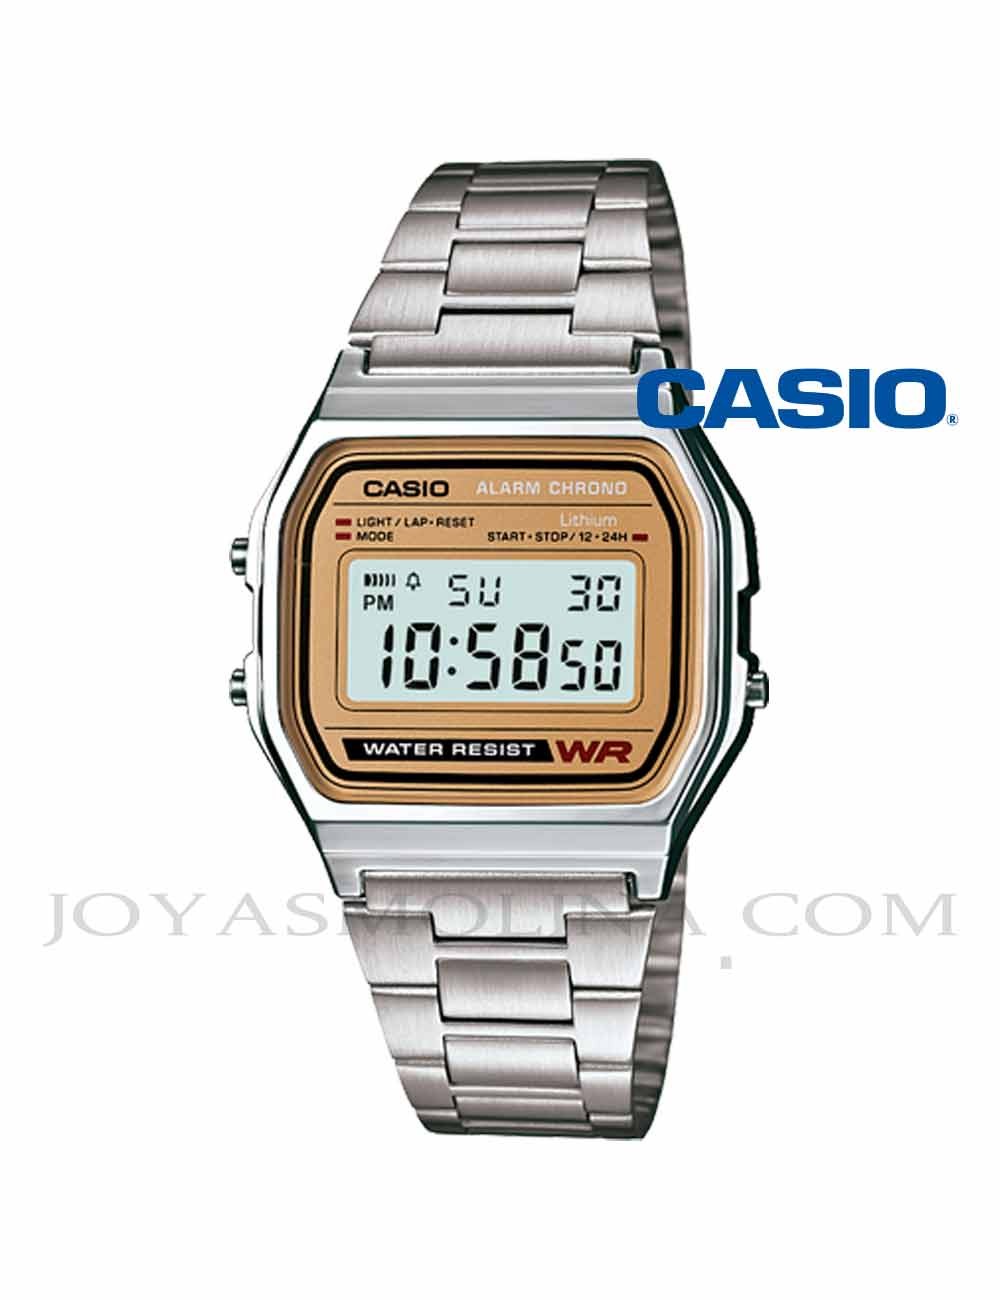 Reloj Casio digital dorado y plateado unisex A158WEA-9EF